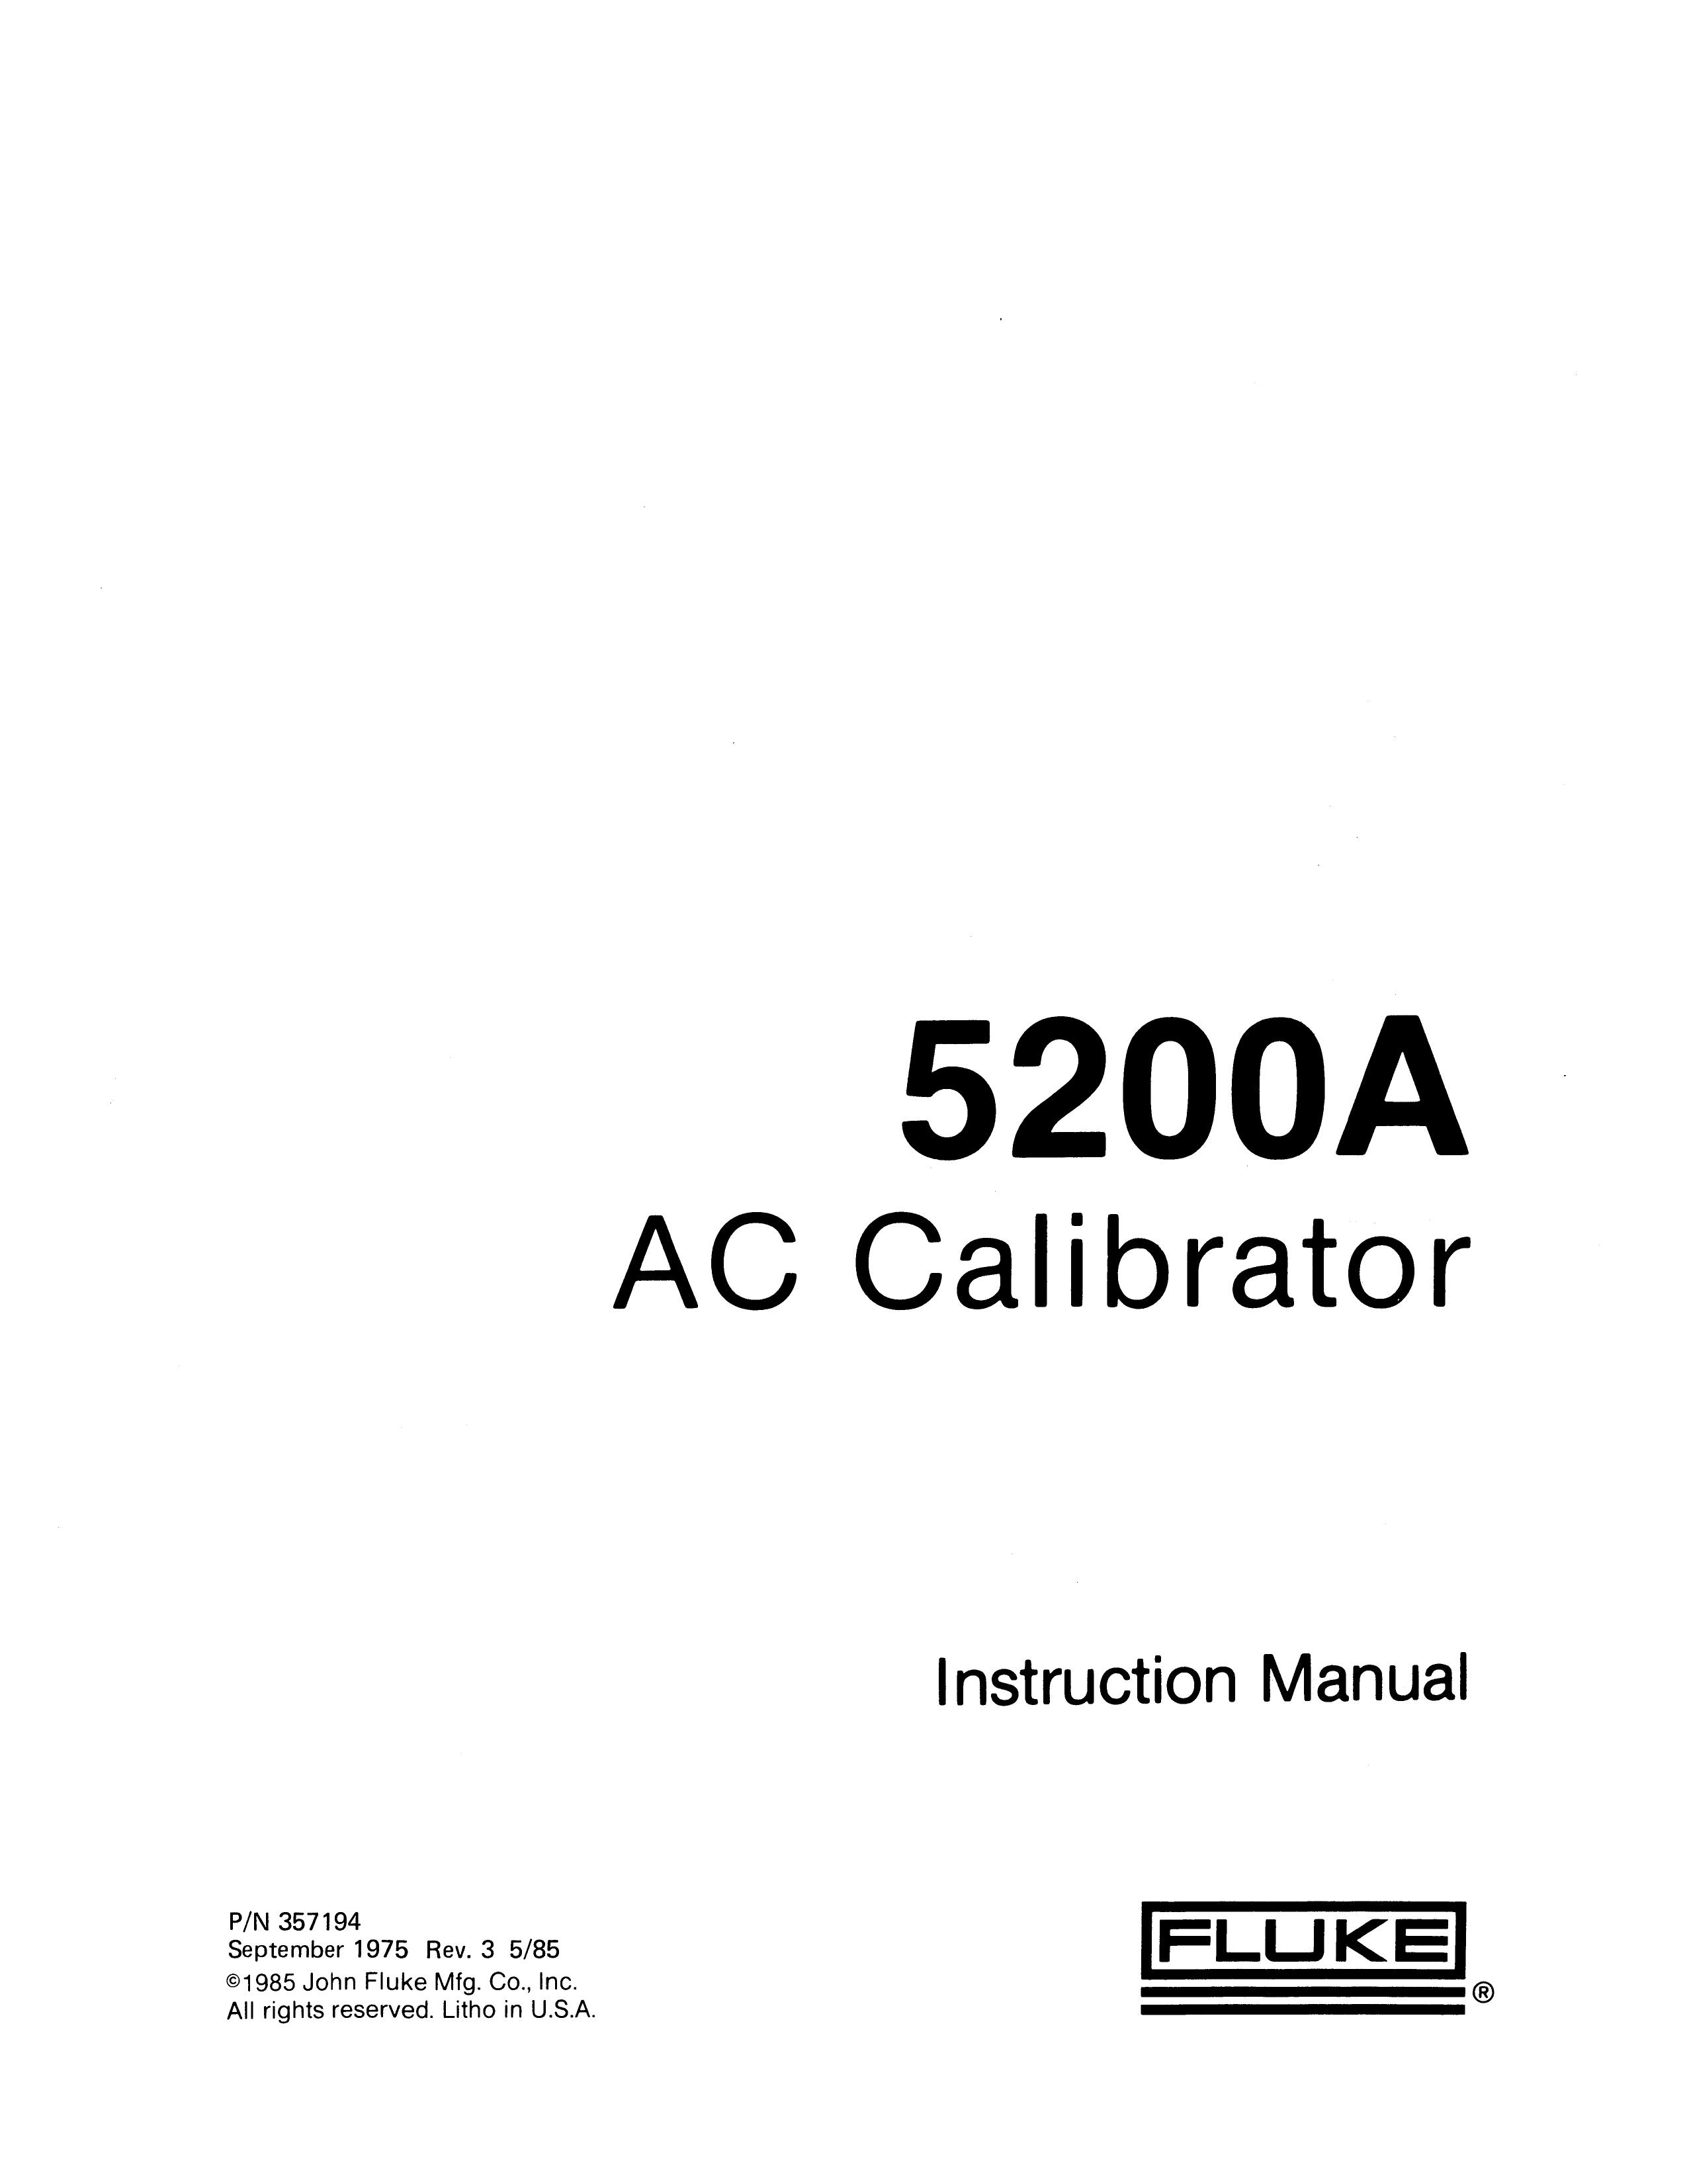 Fluke 5200A Yard Vacuum User Manual